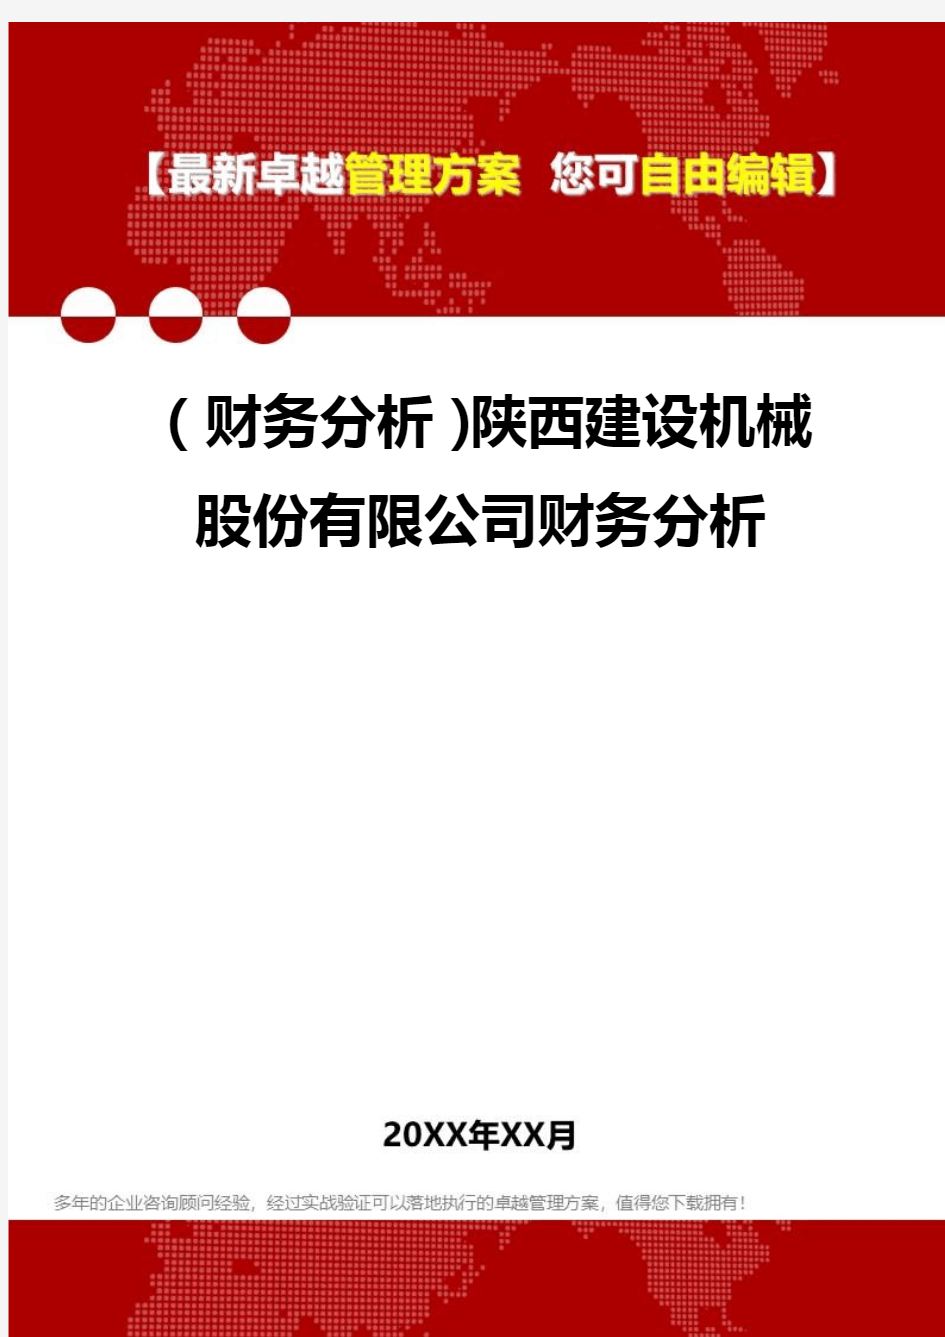 2020年(财务分析)陕西建设机械股份有限公司财务分析